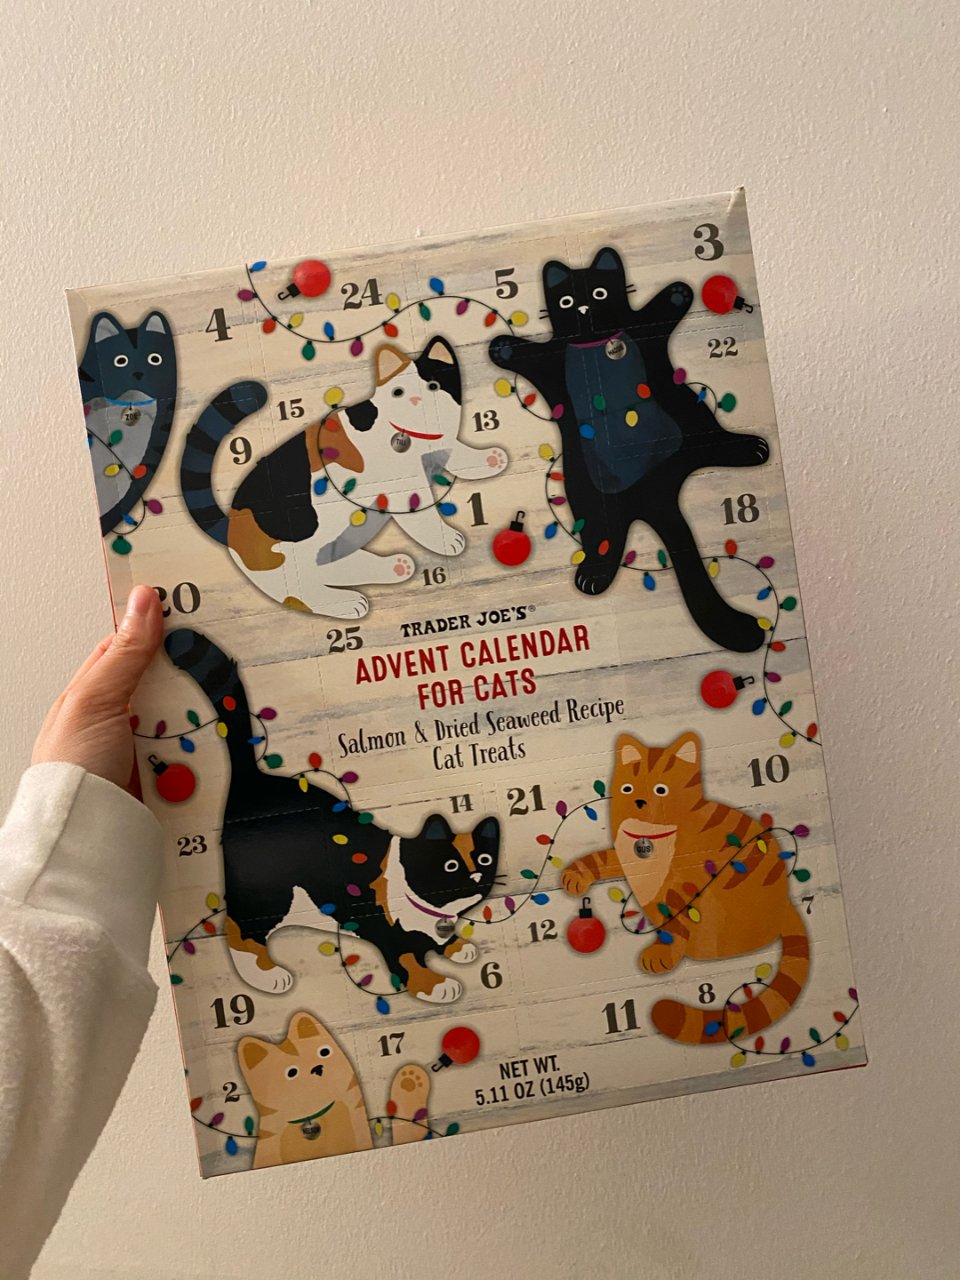 Calendar cats treats